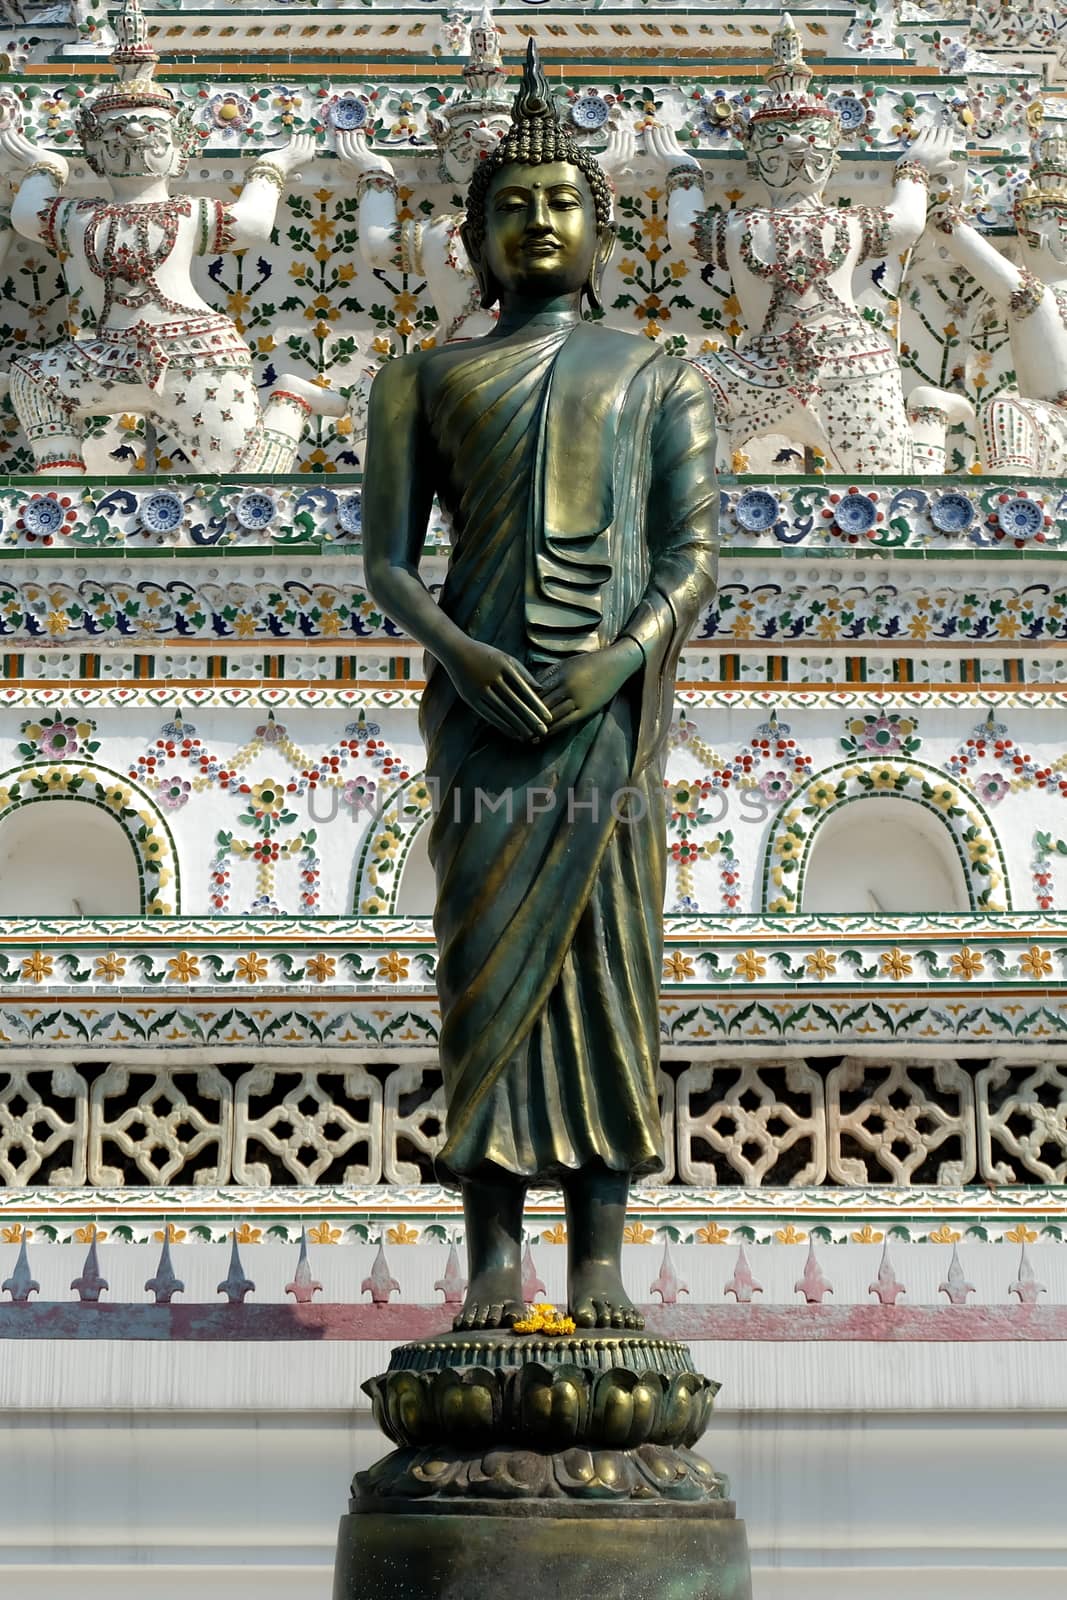 Ancient Bronze Buddha Image at Wat Arun Bangkok, Thailand.